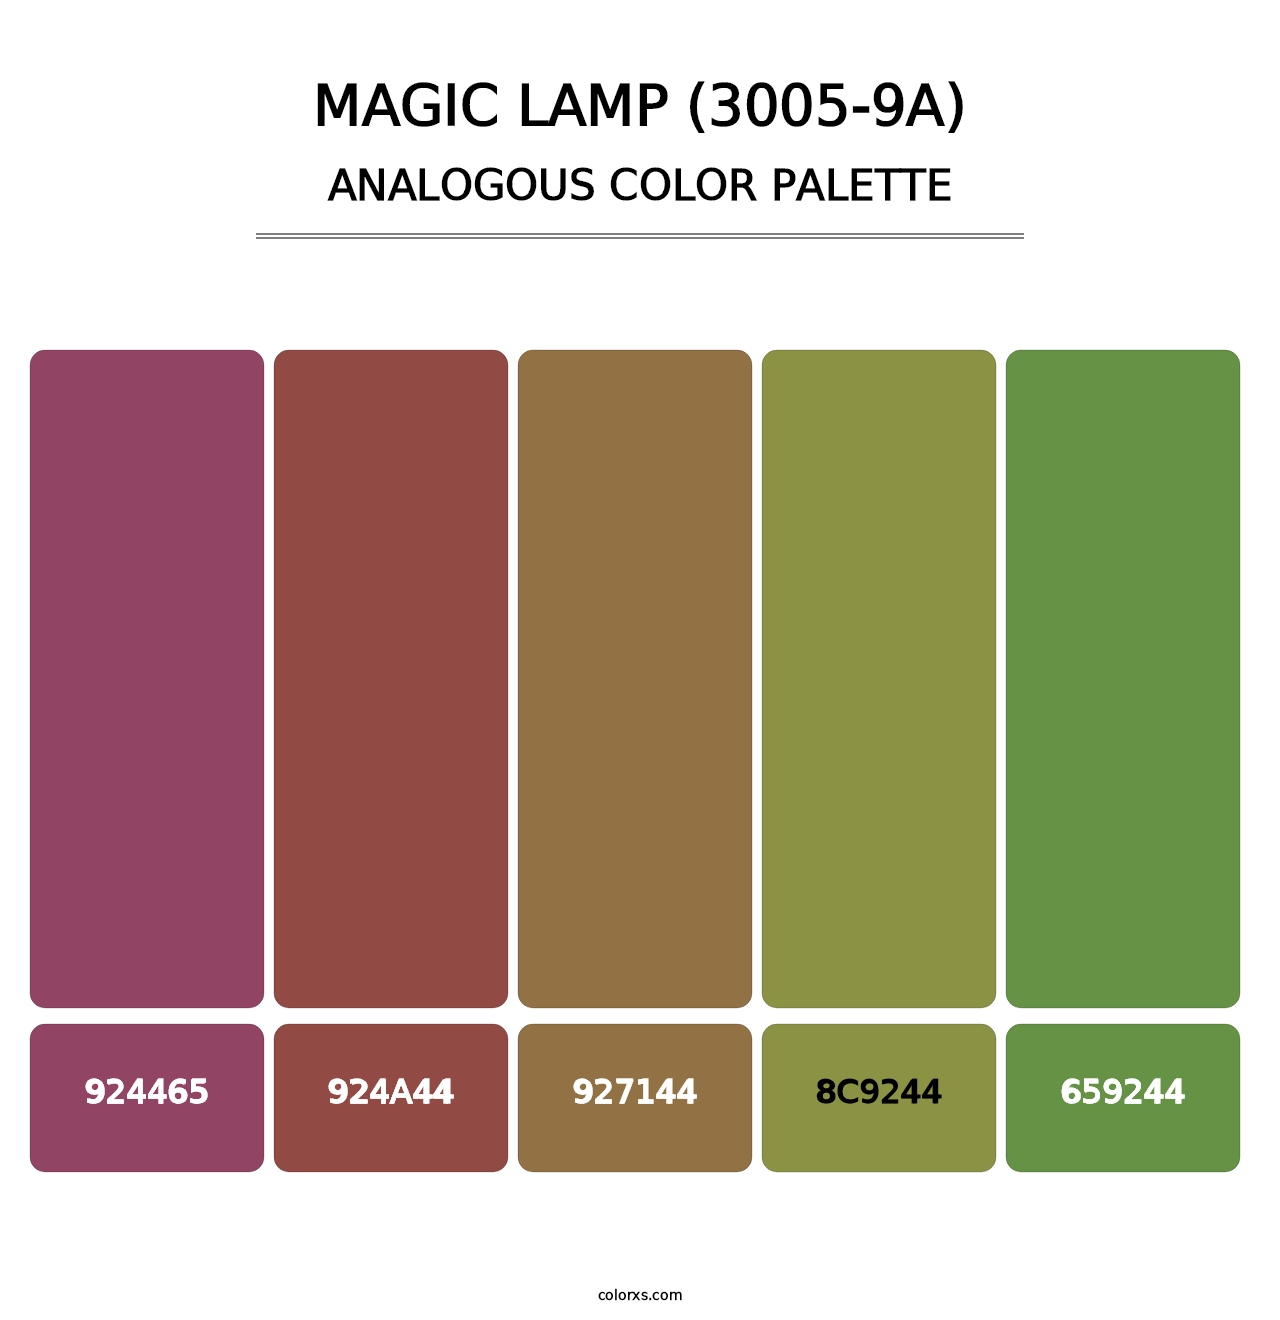 Magic Lamp (3005-9A) - Analogous Color Palette